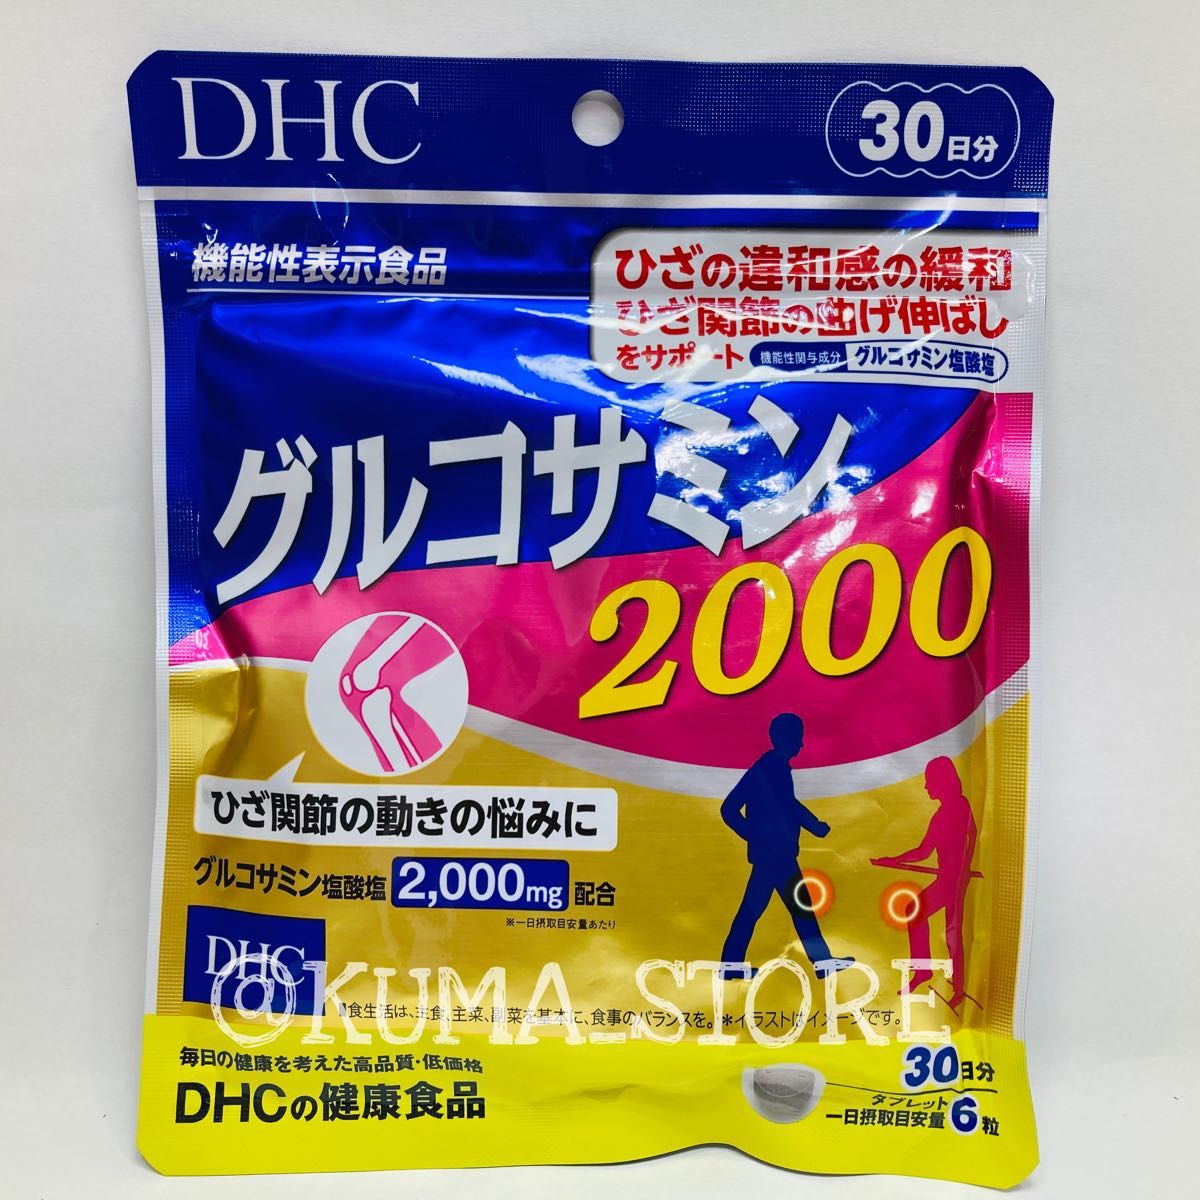 2袋 DHC グルコサミン2000 30日分 健康食品 サプリメント